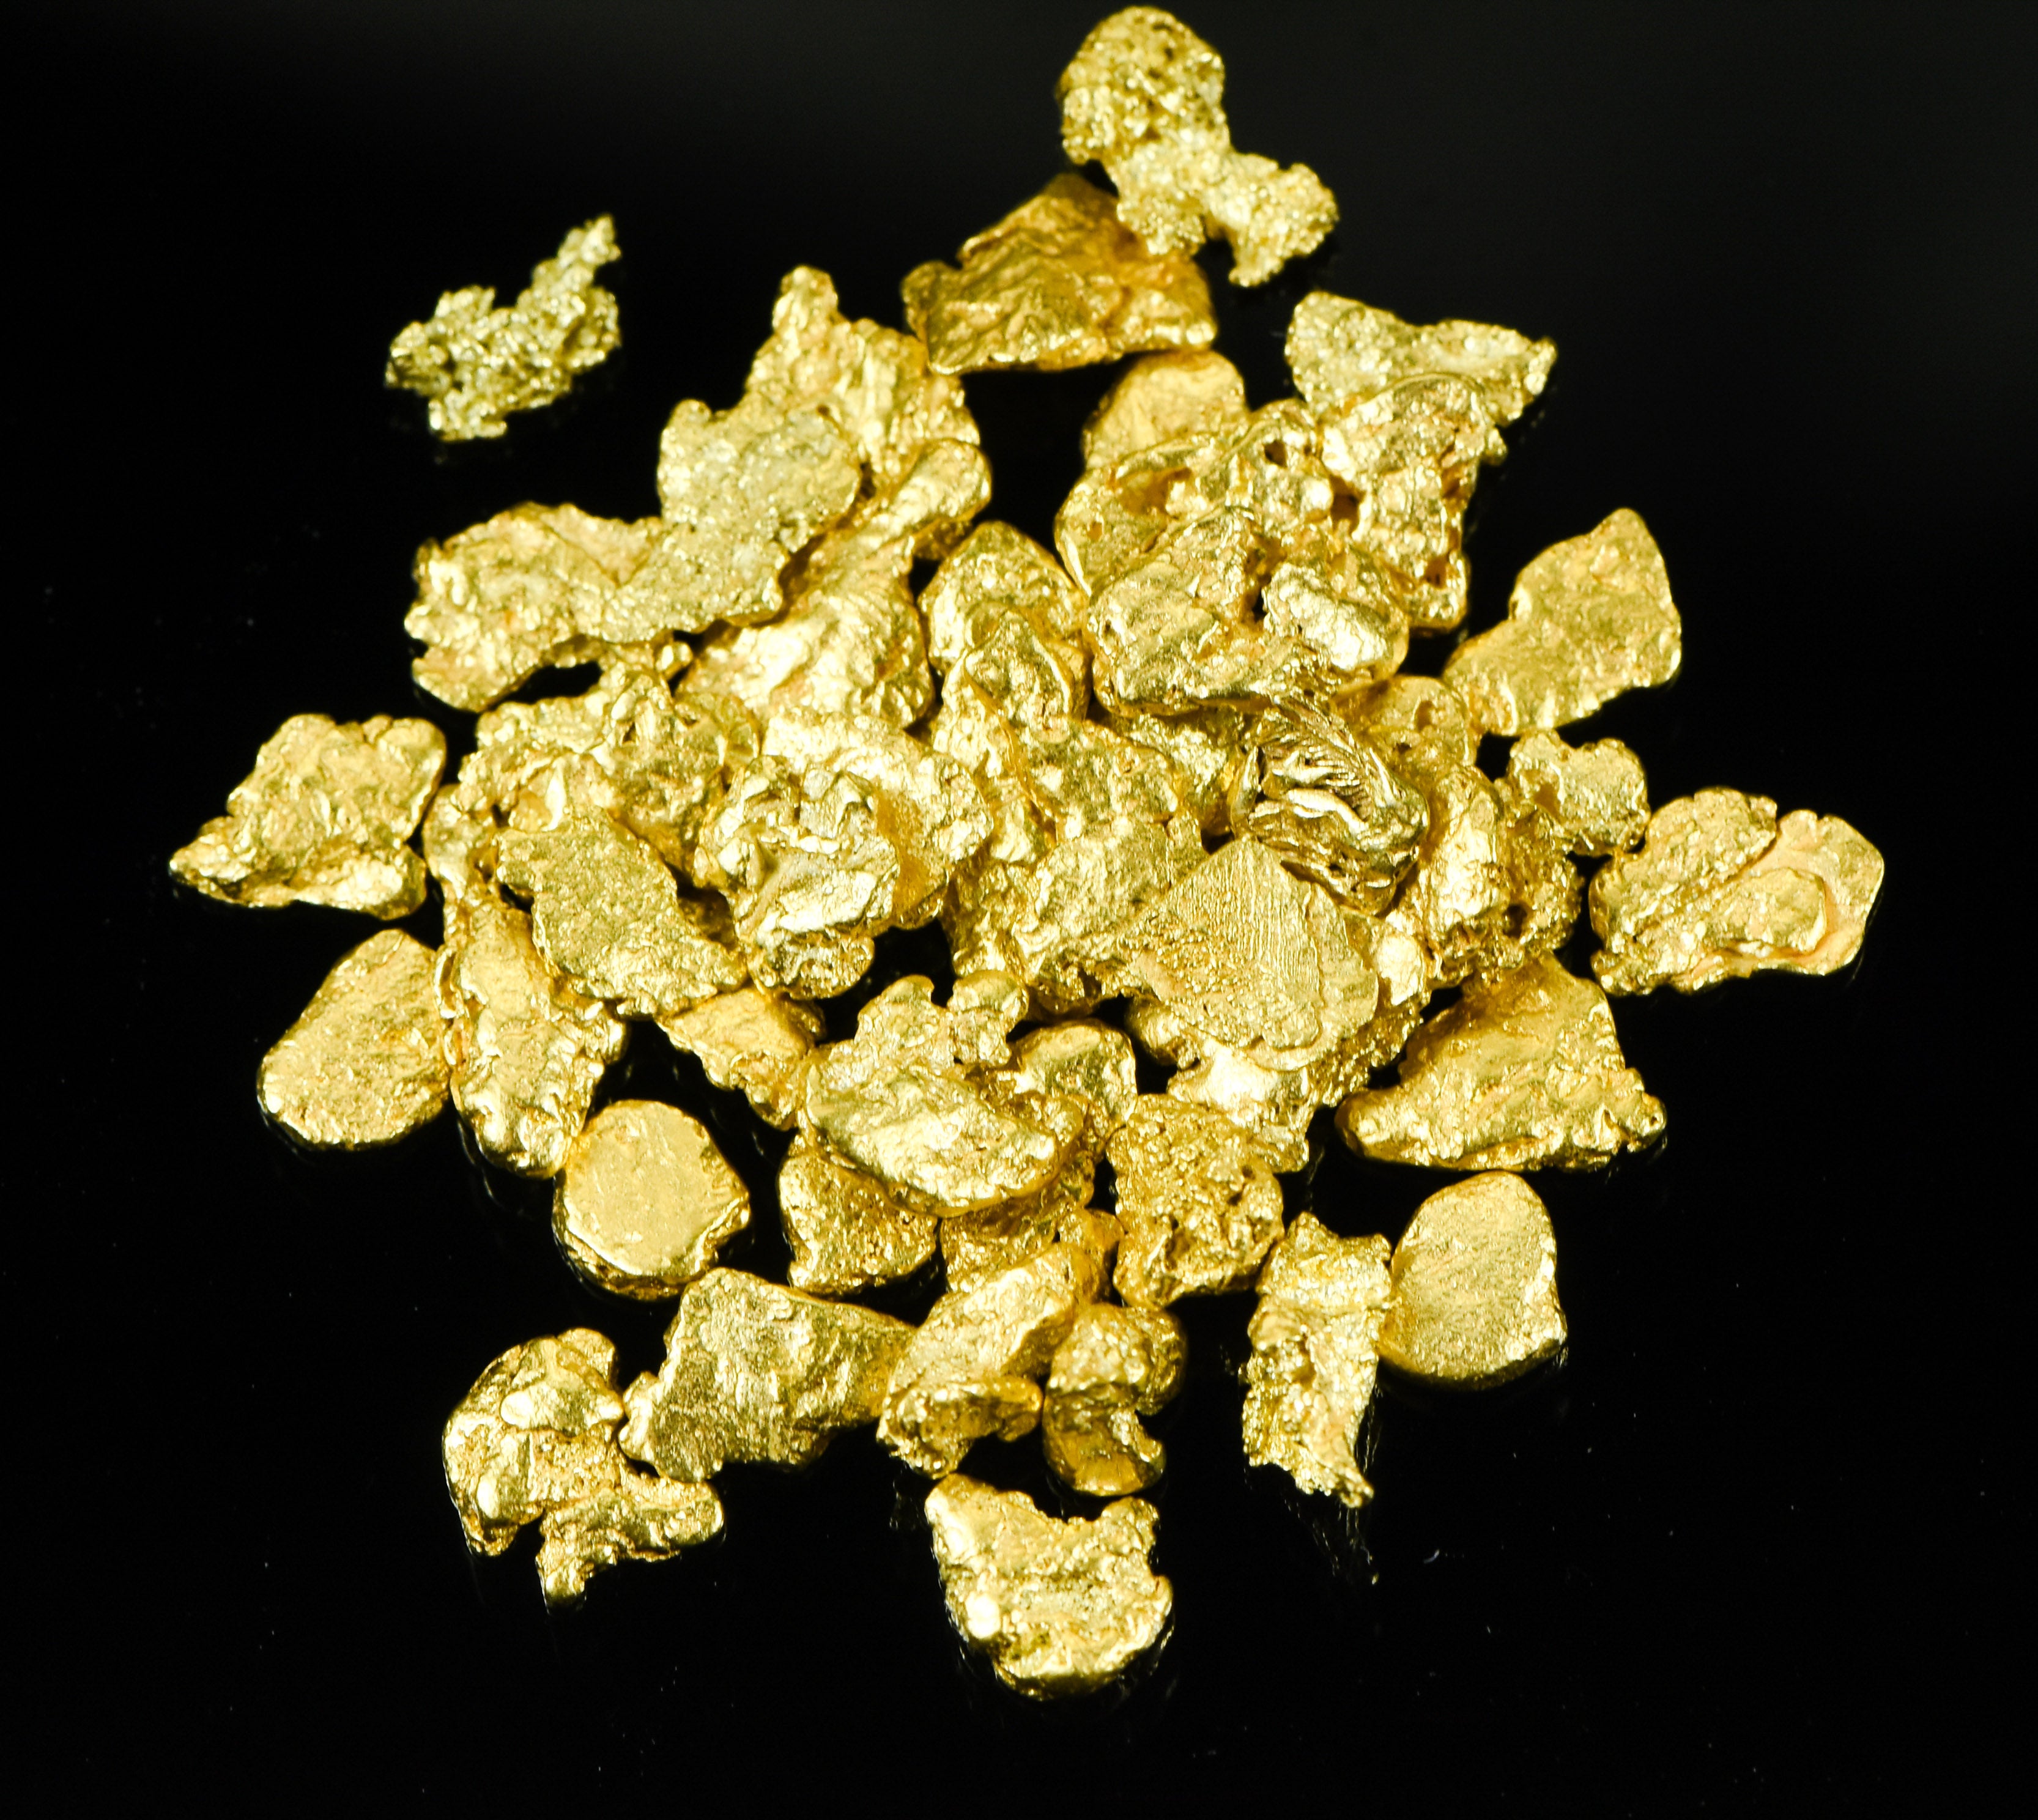 Alaskan Yukon BC Gold Rush Nuggets #6 Mesh 1/2 Troy Oz 15.5 Grams or 10 DWT